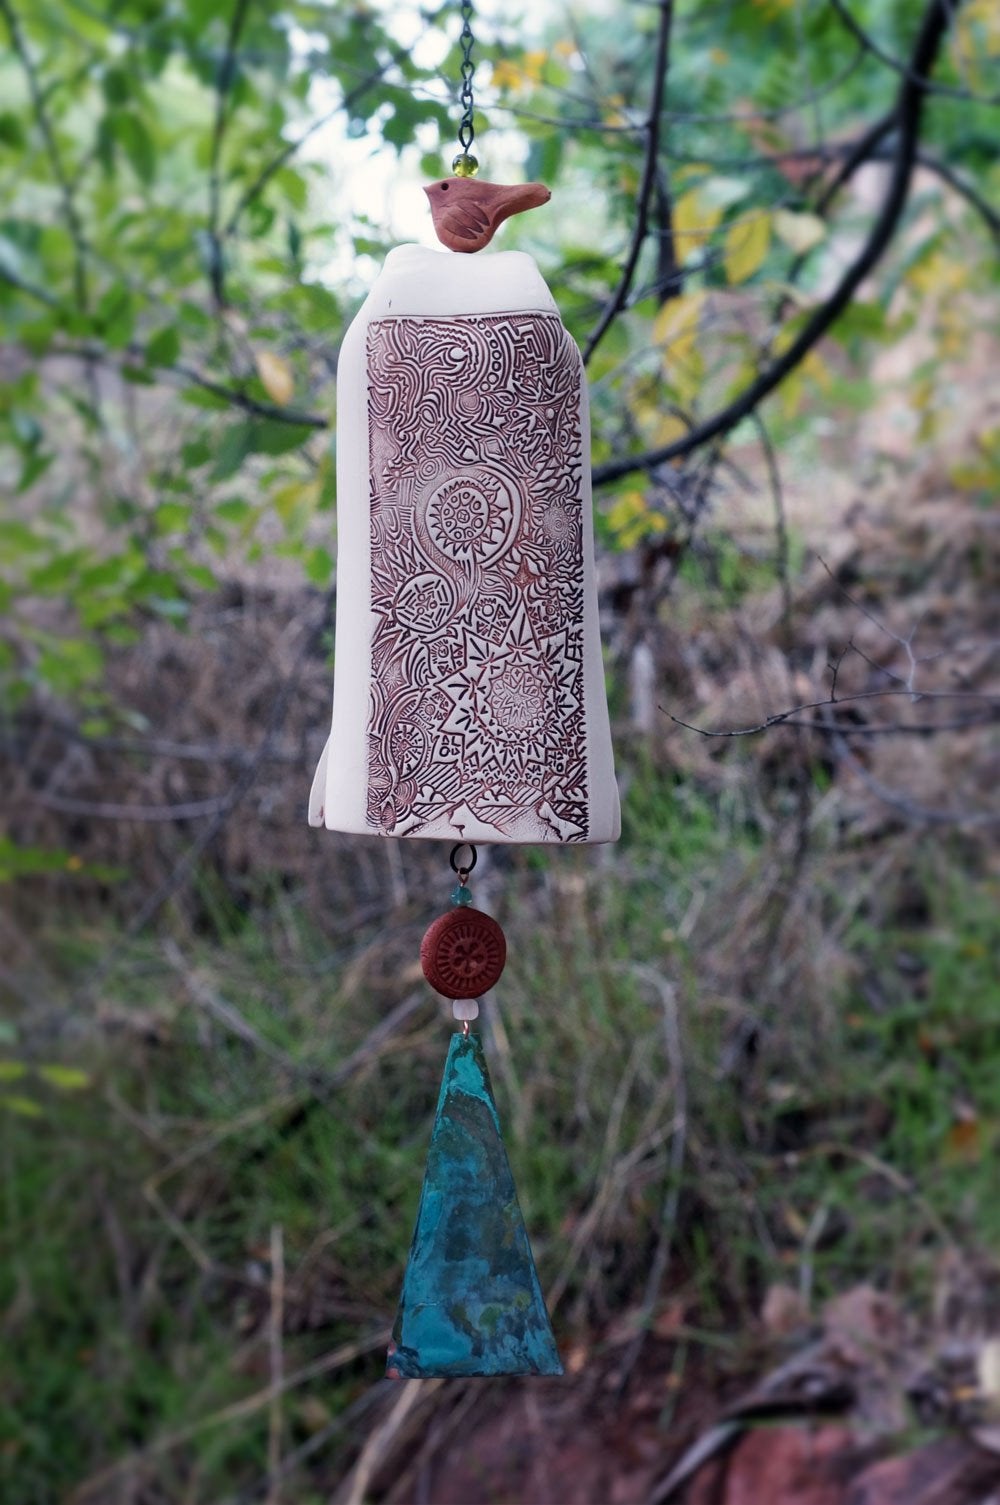 Handmade Wind Chime Garden Bell with Starburst Pattern-EchoDecor